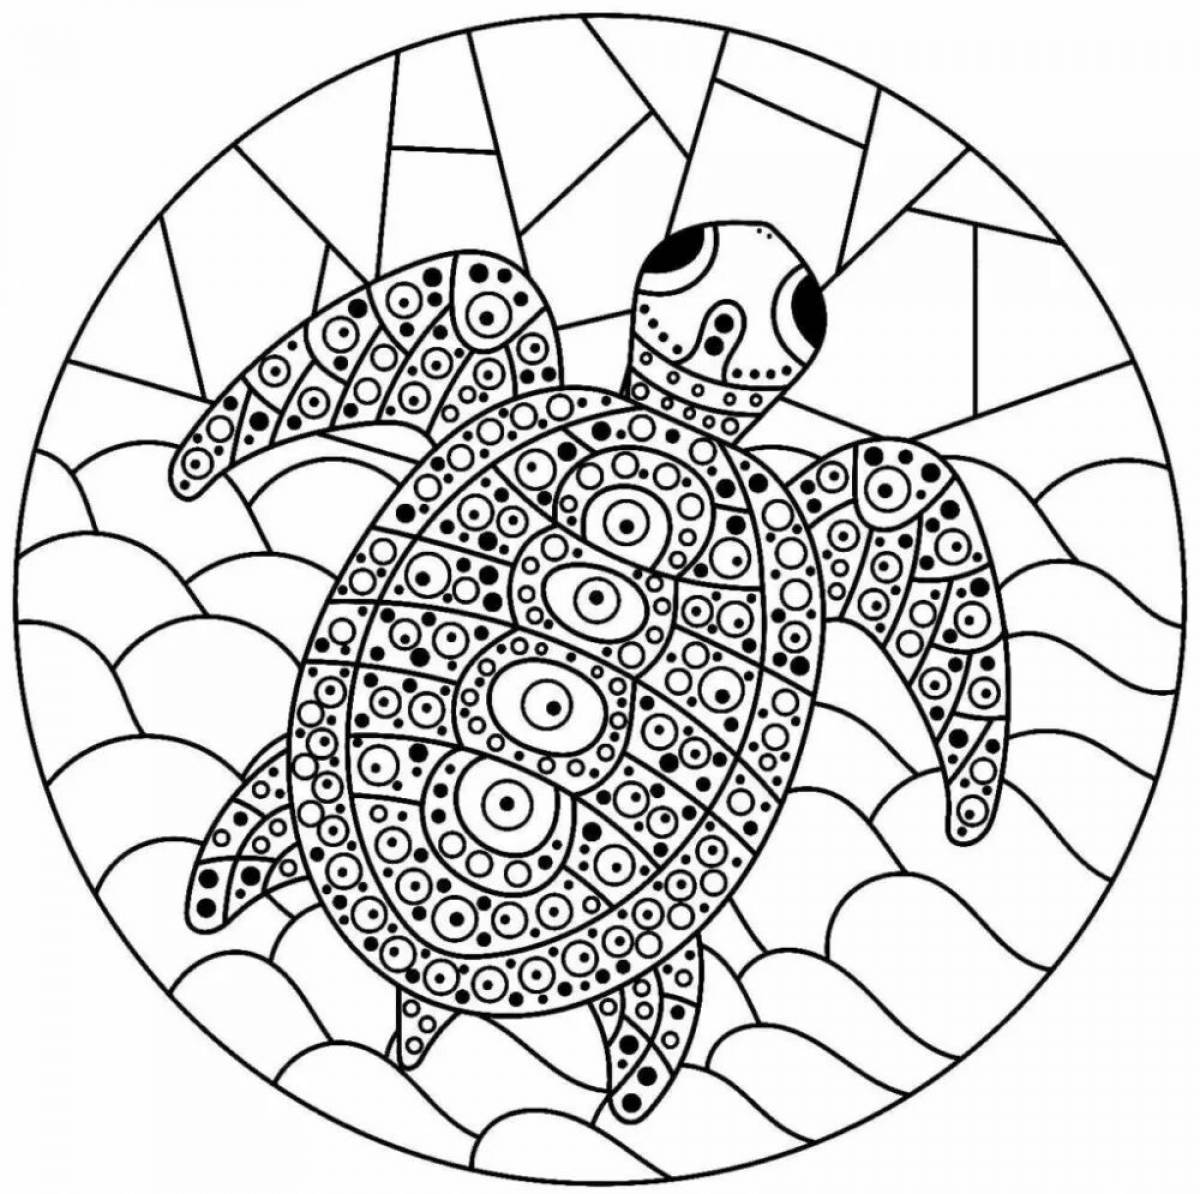 Великолепная антистрессовая черепаха-раскраска